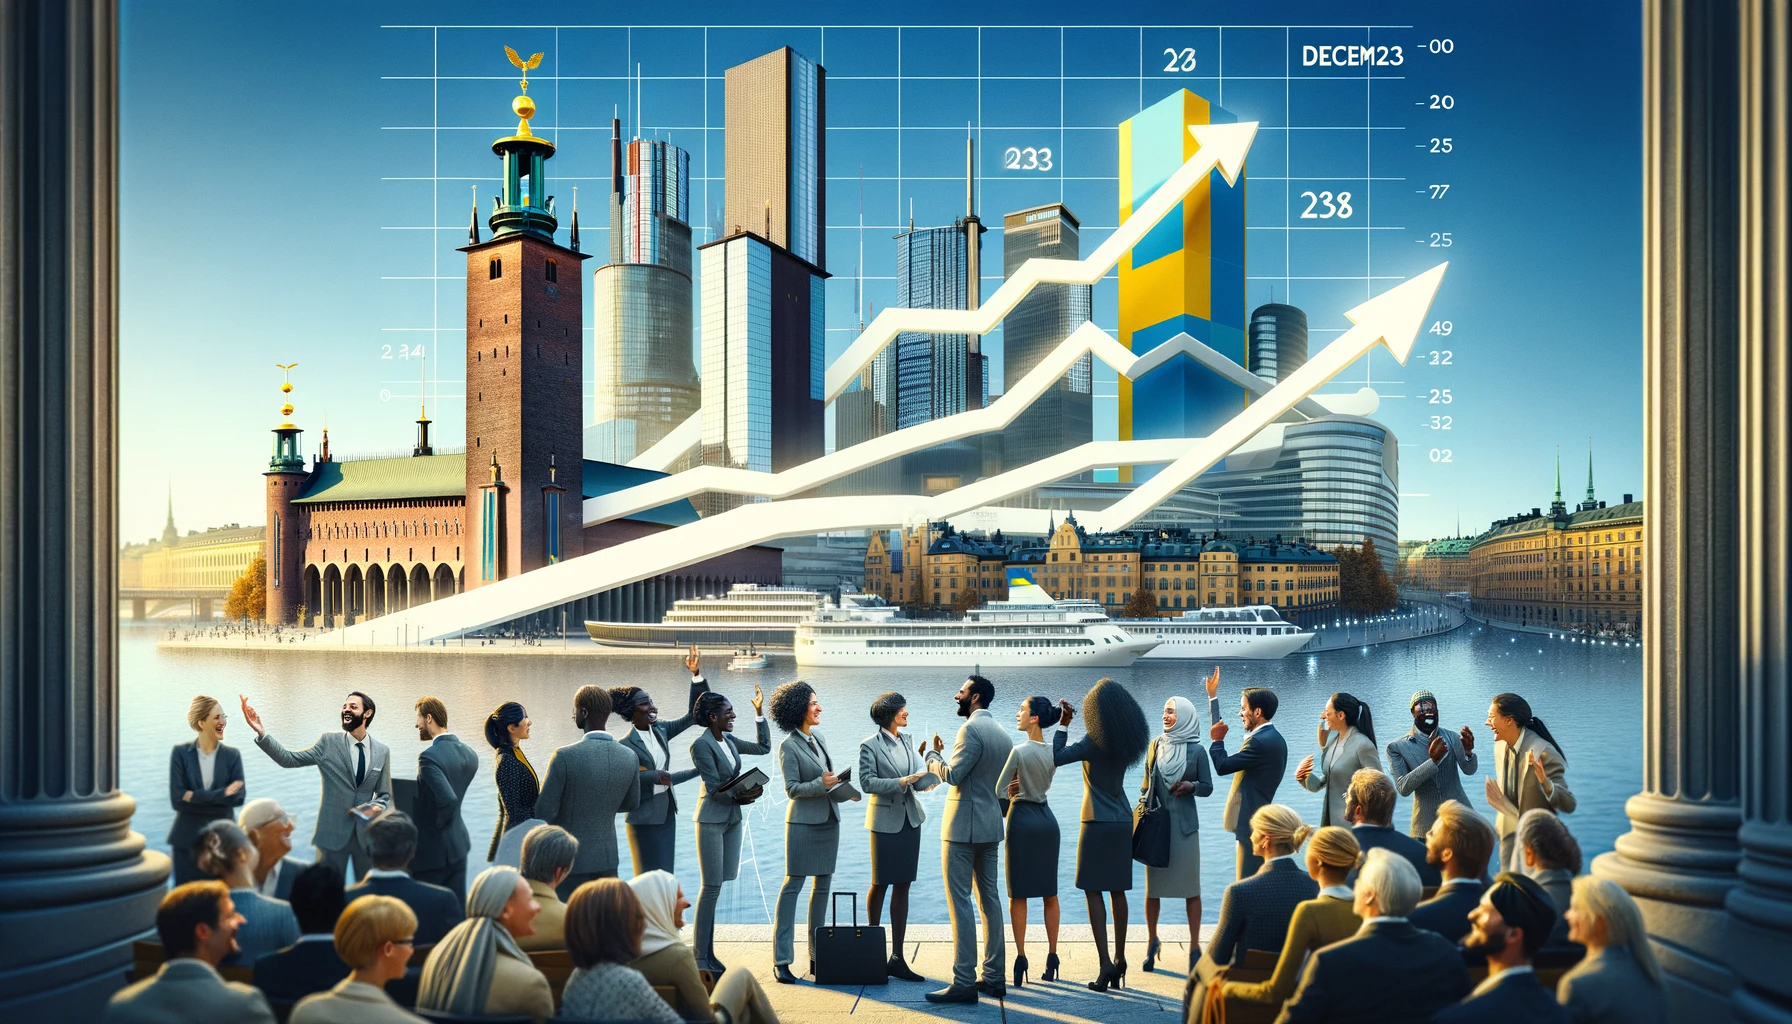 svenska konsumenter och deras förtroende ökar för framtiden